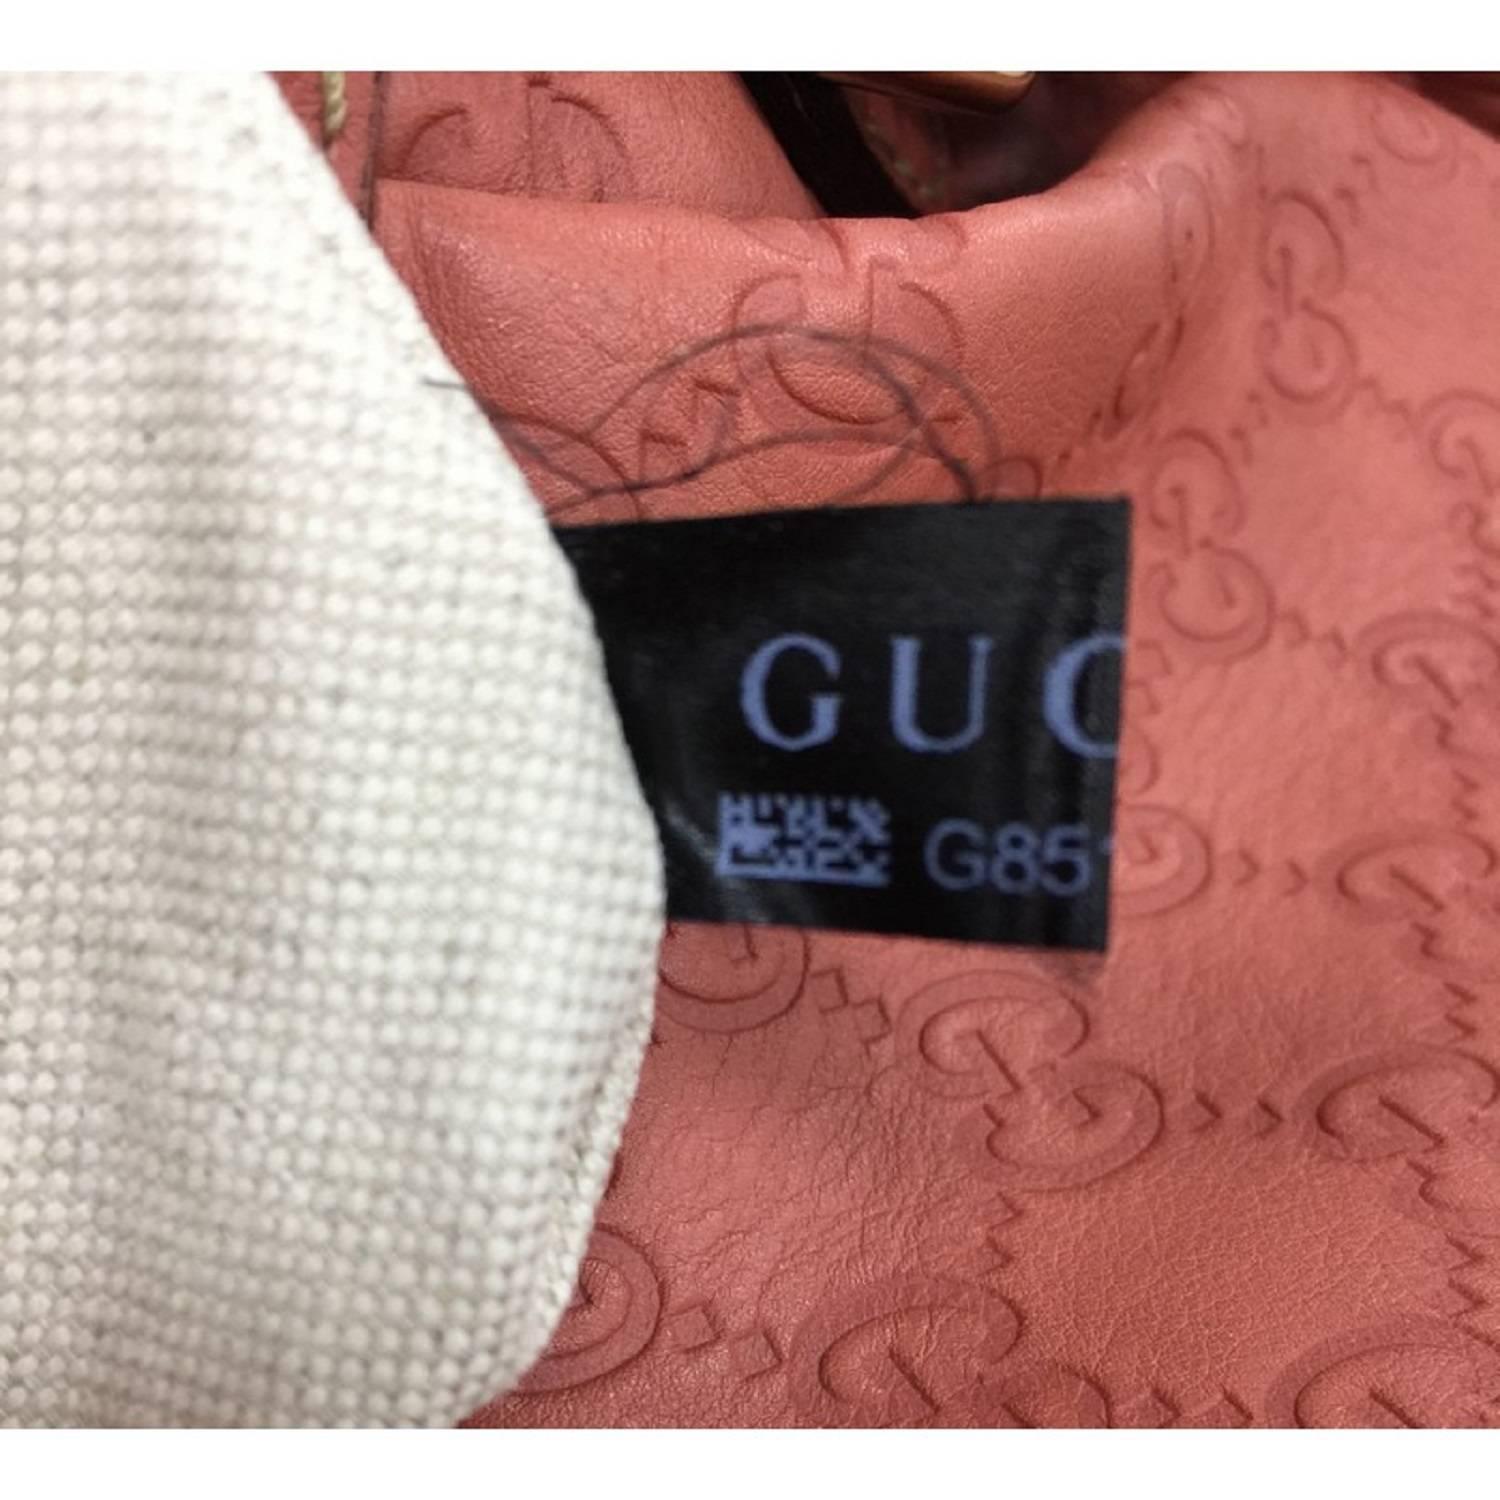 Gucci Sukey Convertible Boston Bag Guccissima Leather 2